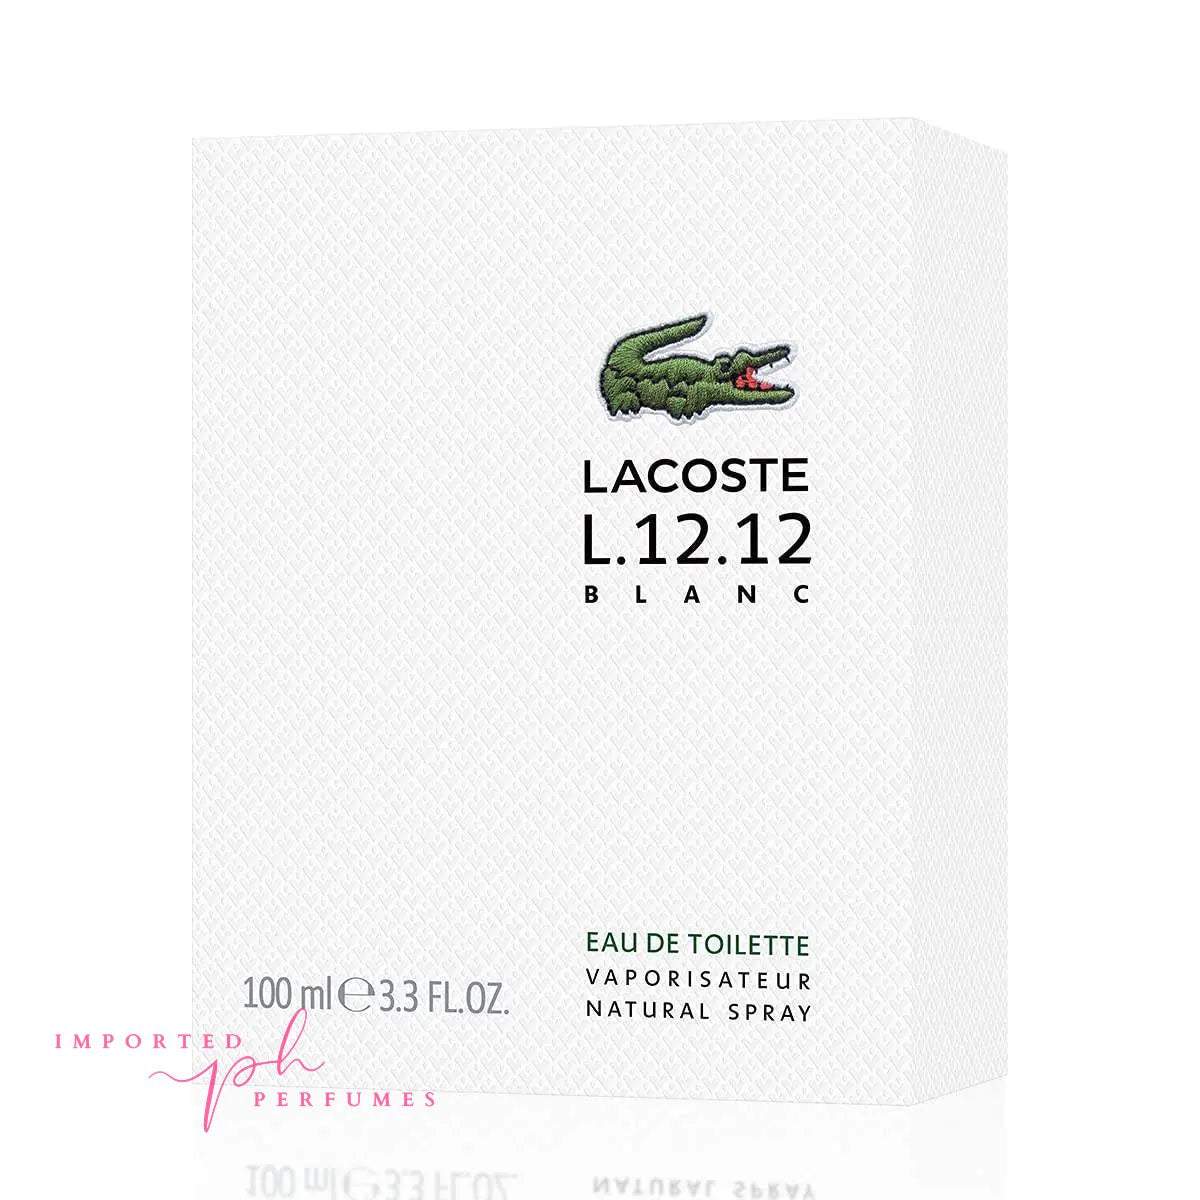 Lacoste L.12.12 Blanc Pour Lui Eau De Toilette 100ml-Imported Perfumes Co-100ml,Lacoste,men